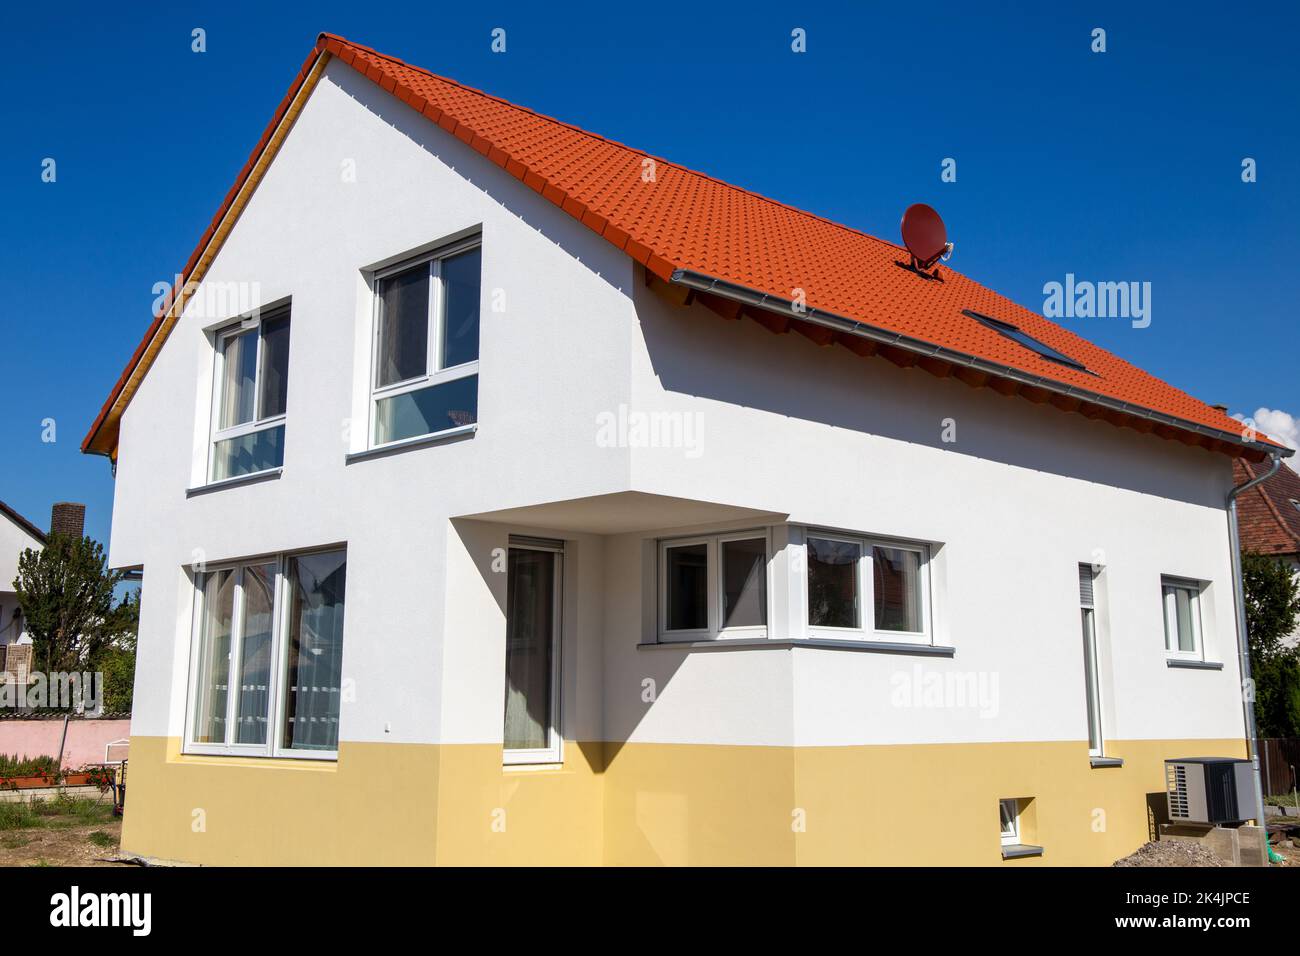 Nueva casa unifamiliar en Alemania Foto de stock